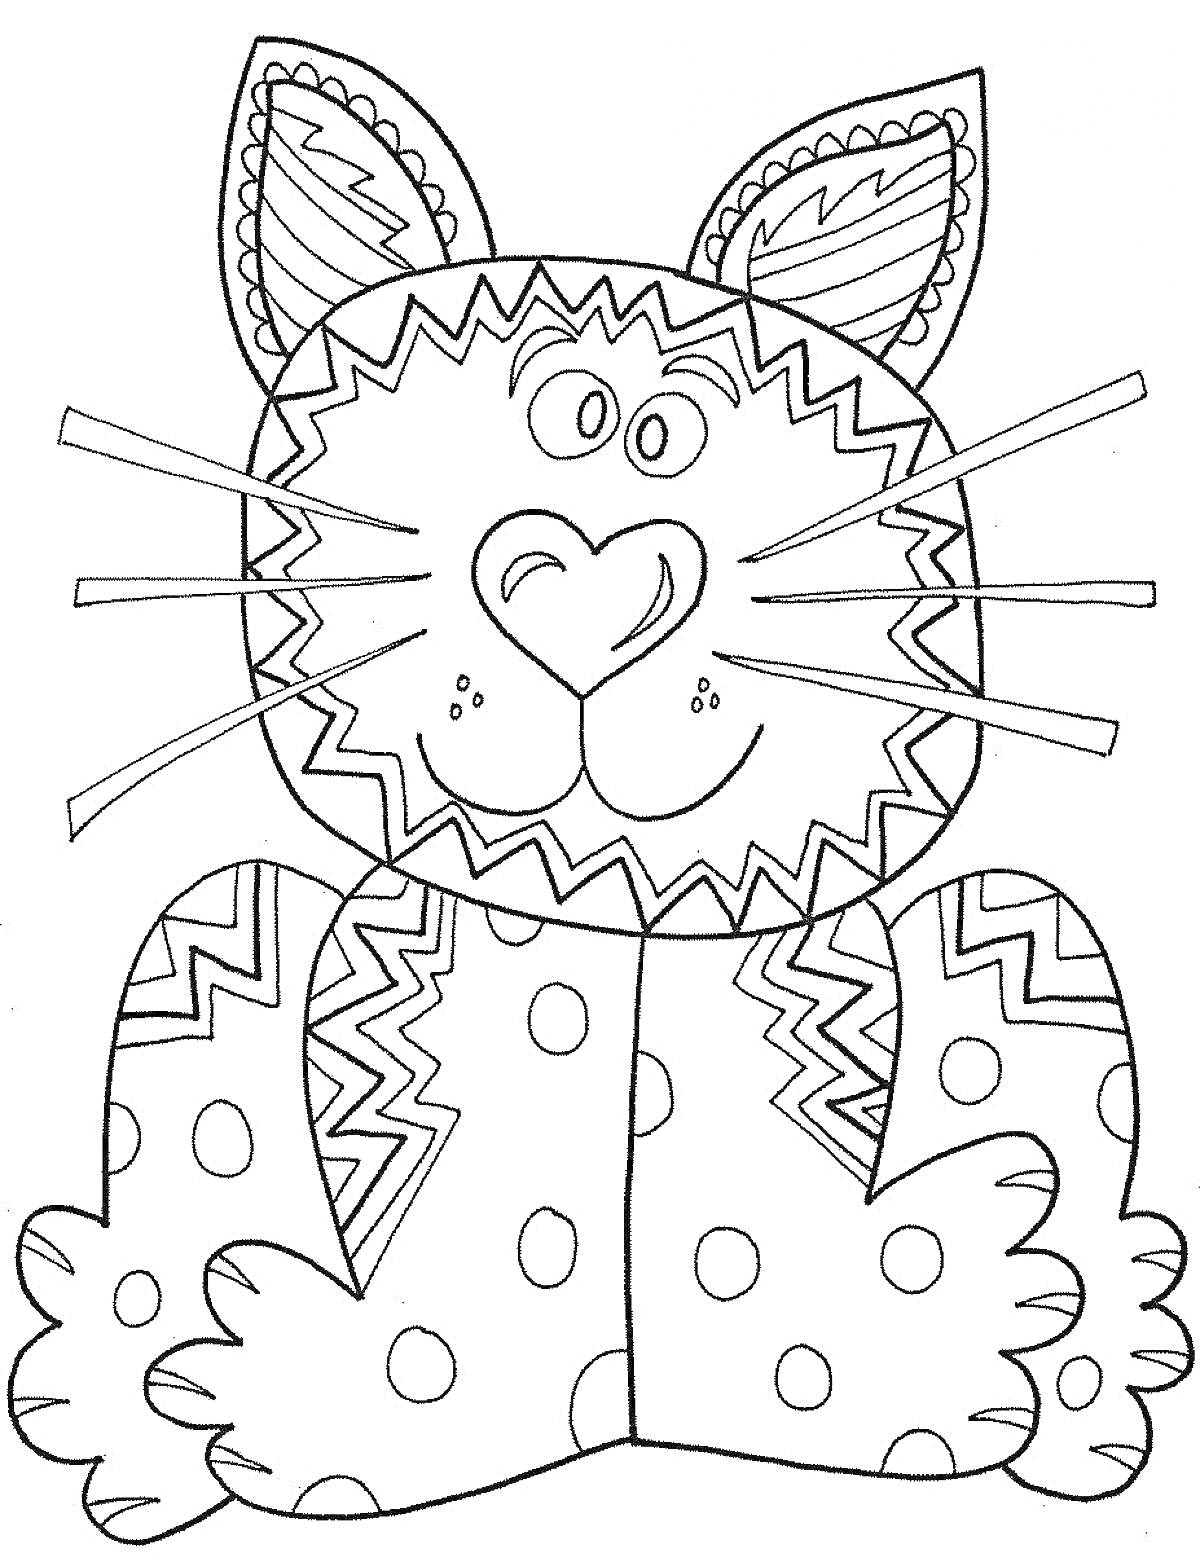 Раскраска Кот с полосатыми ушами, узором на щеках и лапах, и горошками на теле